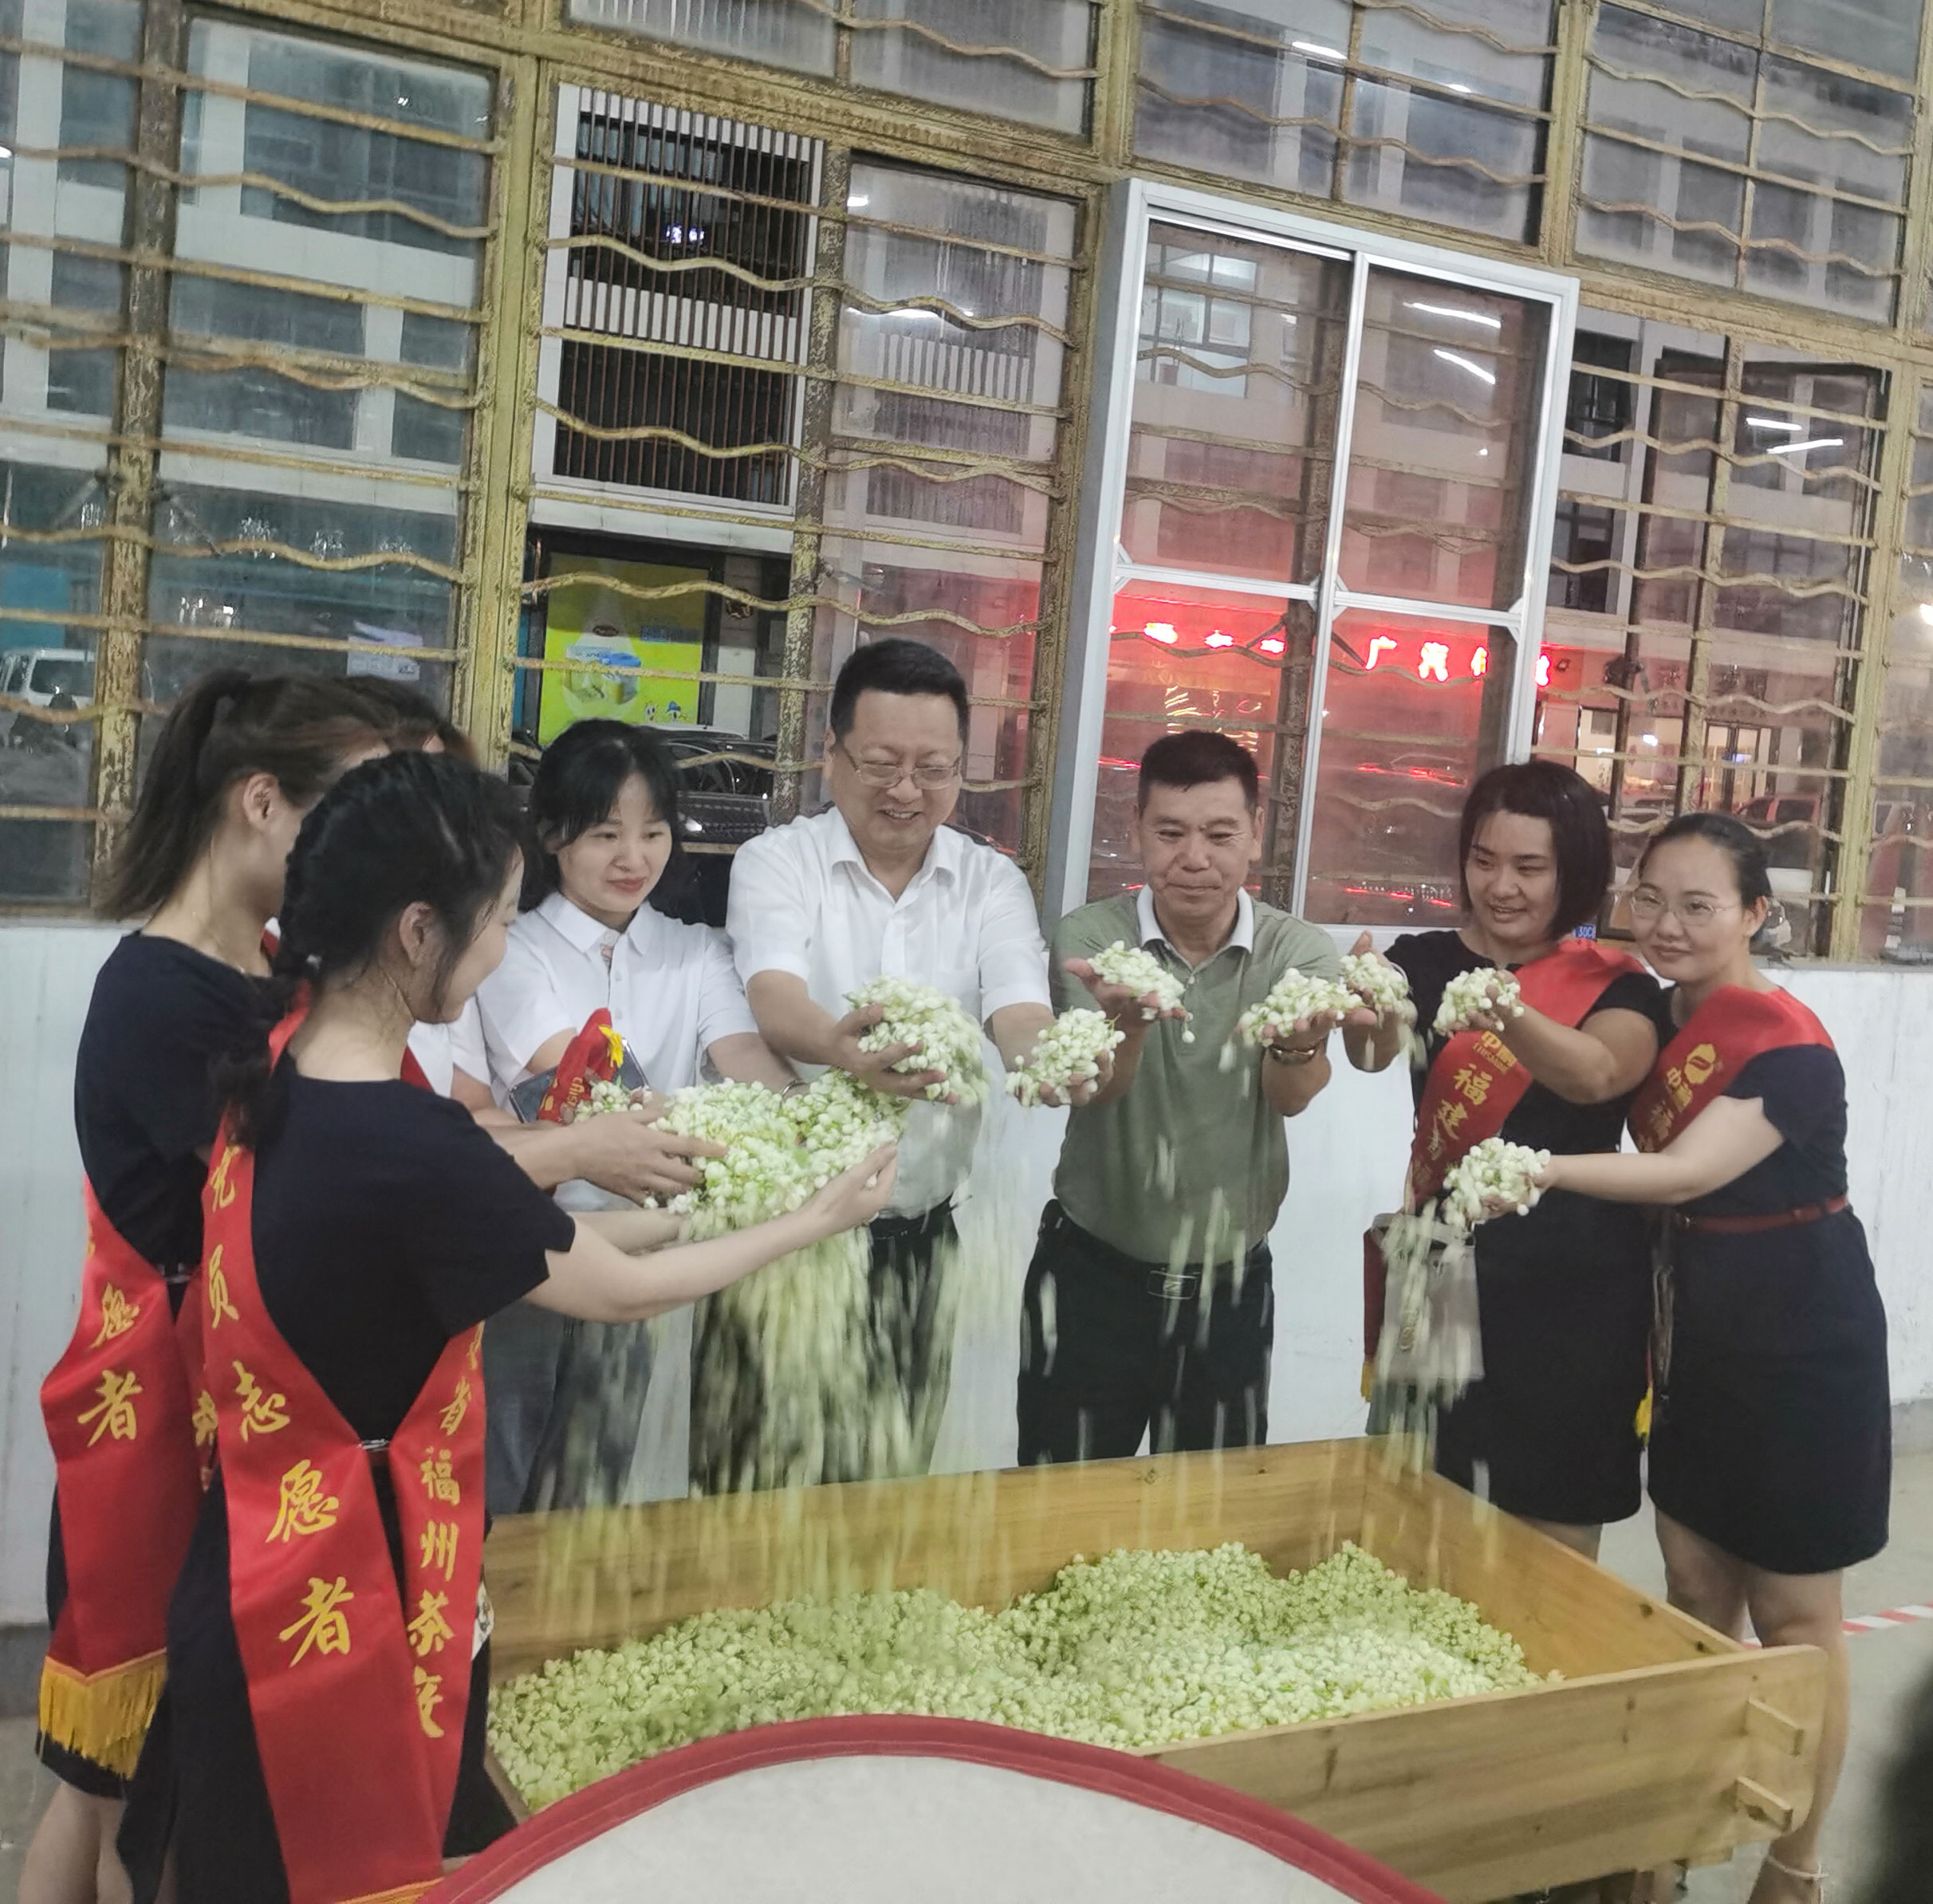 福州茉莉花茶传统窨制工艺传承人、传承大师赛在福州茶厂举行